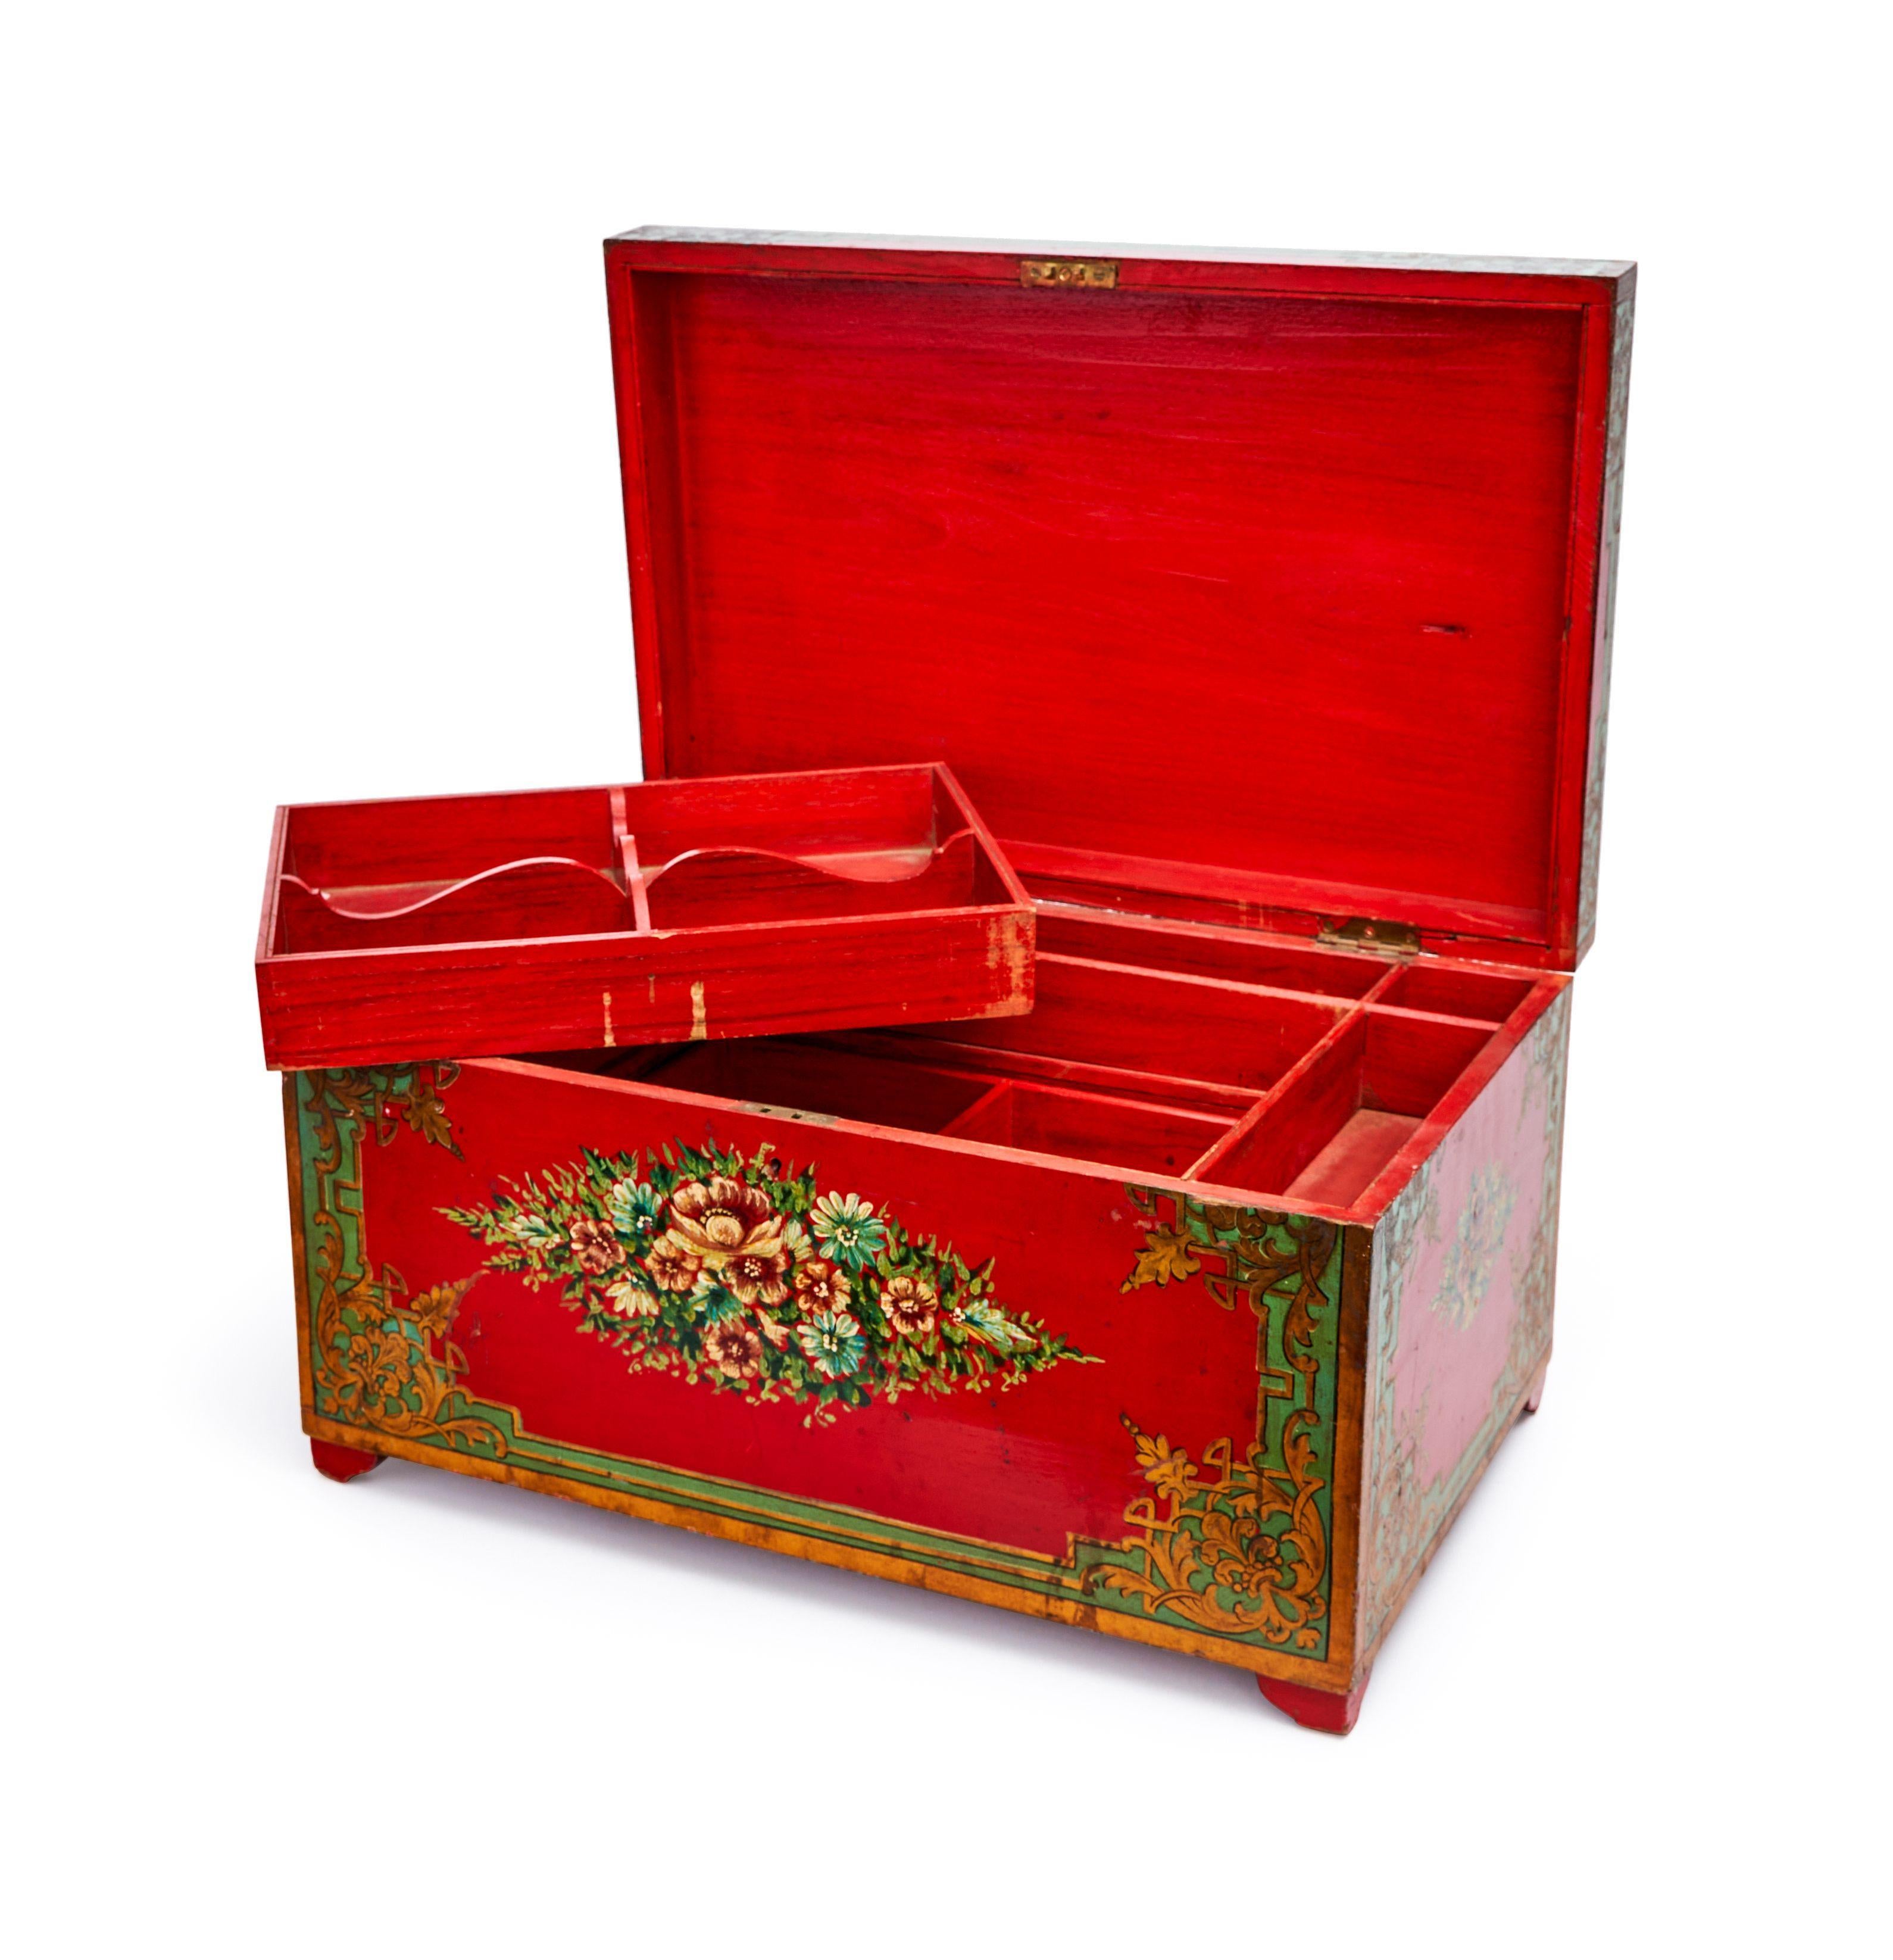 Une superbe boîte de caisse de l'ère Qajar, ornée d'une belle finition en laque rouge et de motifs floraux sur tout le pourtour de la boîte.
